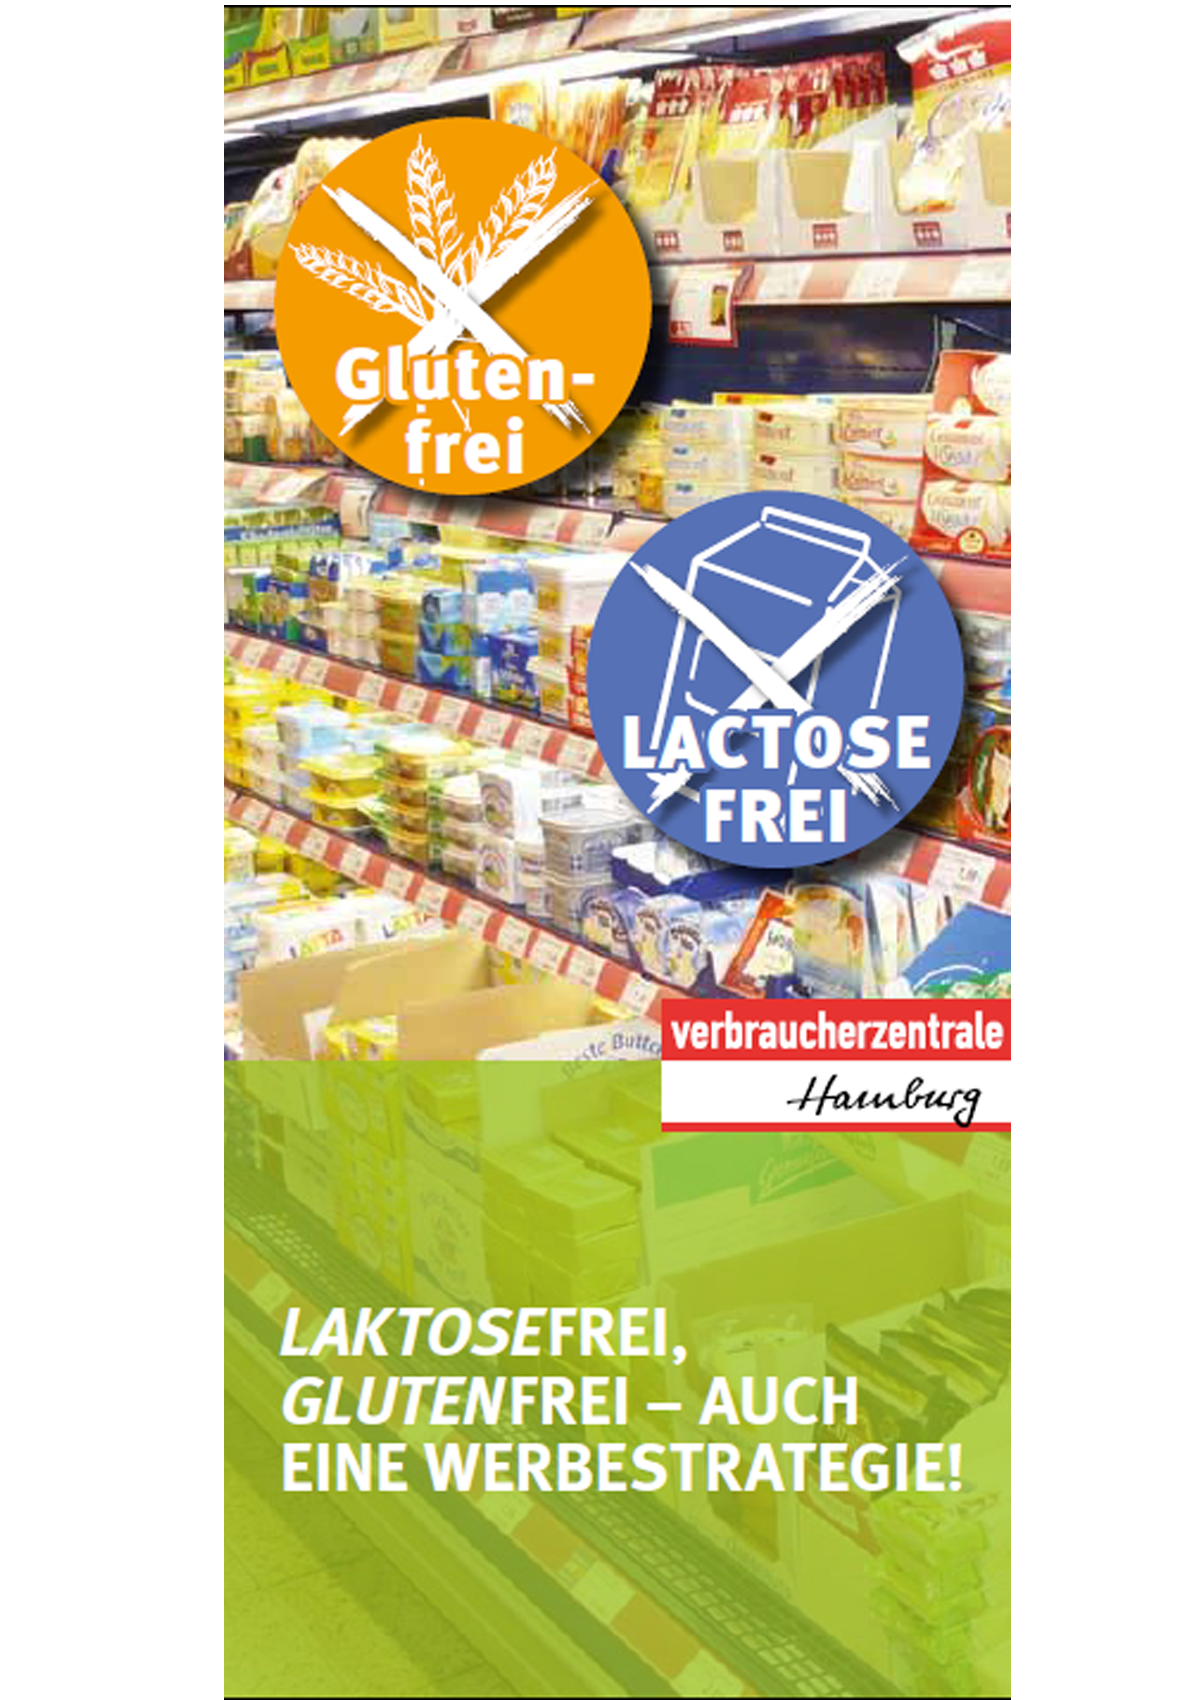 Cover des Faltblatts der Verbraucherzentralen zu laktose- und glutenfreien Produkten